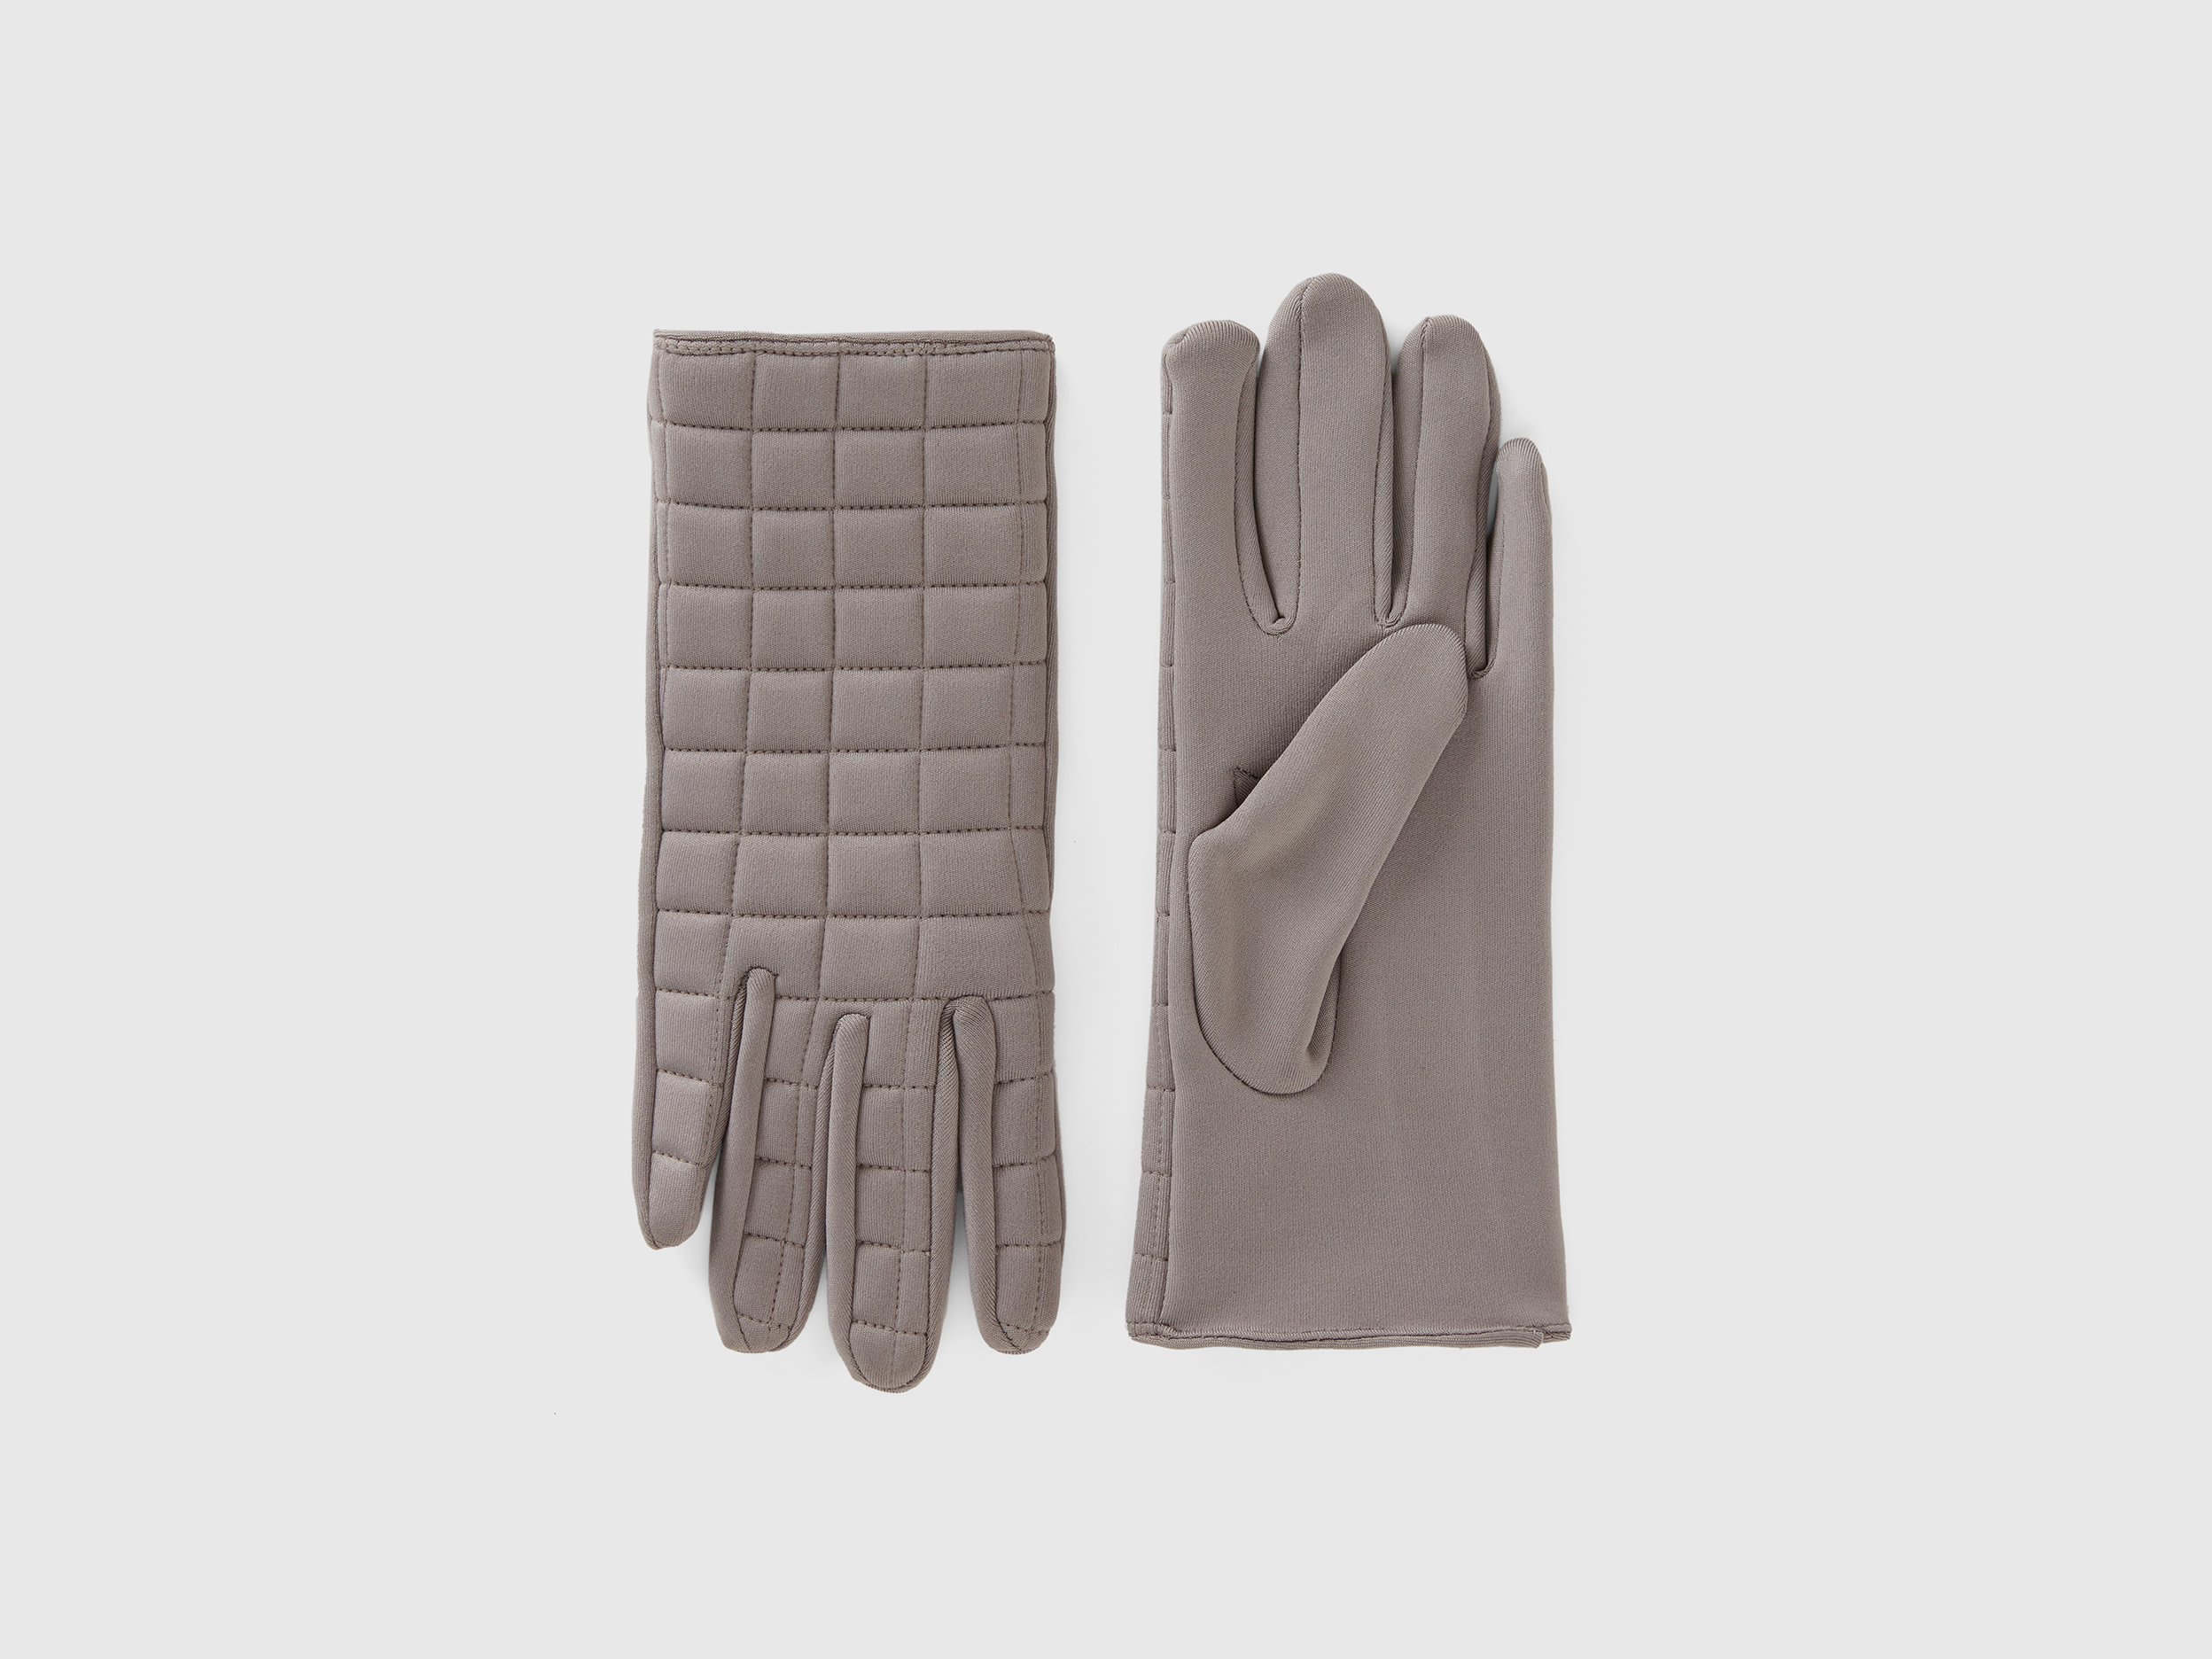 Benetton, Padded Nylon Gloves, size L, Light Gray, Women